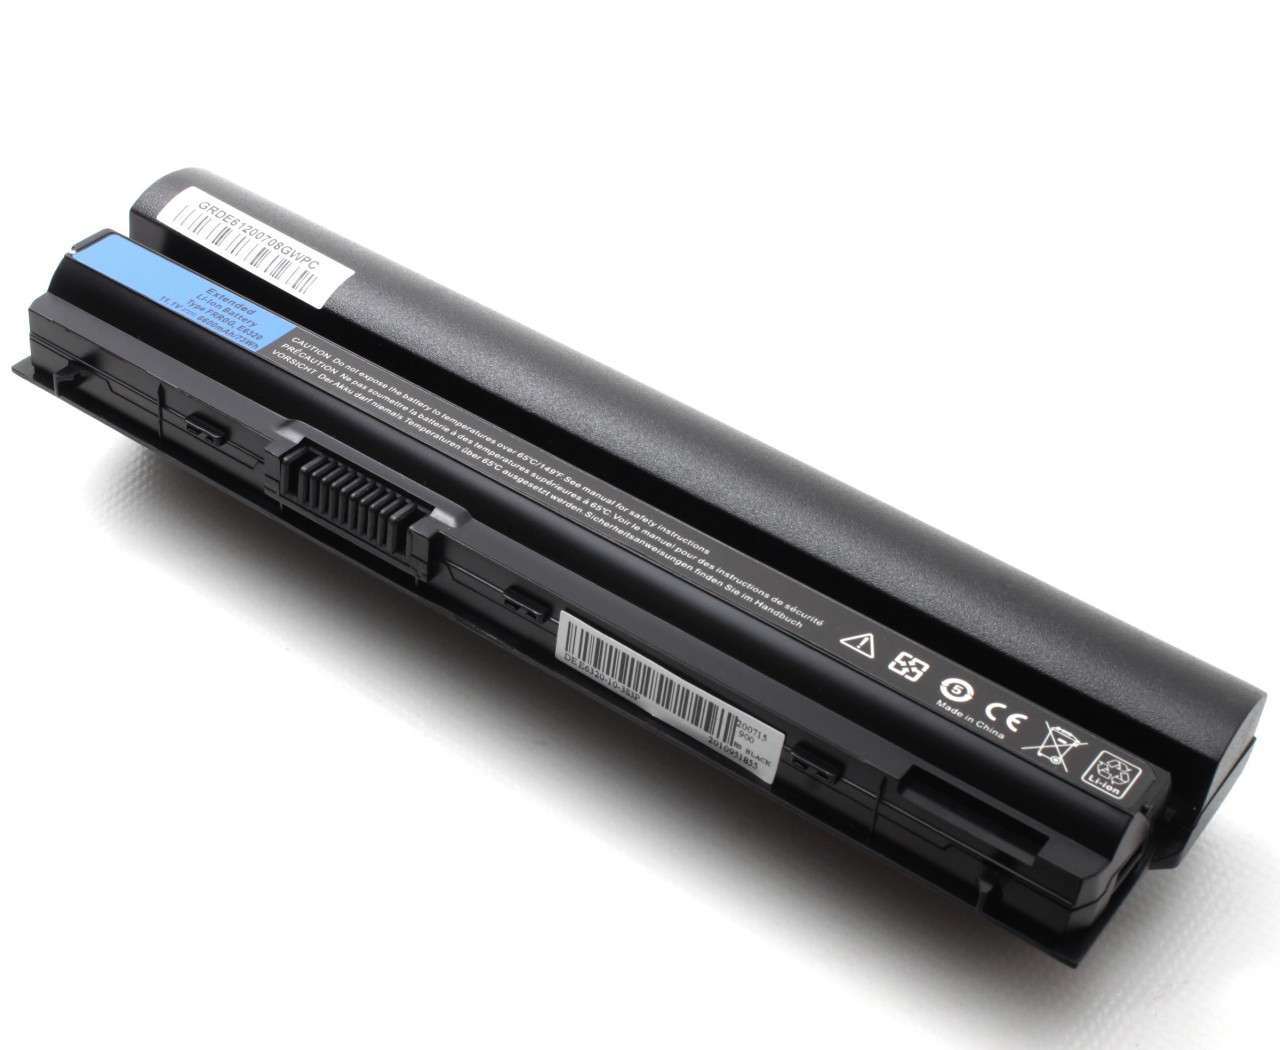 Baterie Dell KFHT8 6600mAh imagine powerlaptop.ro 2021